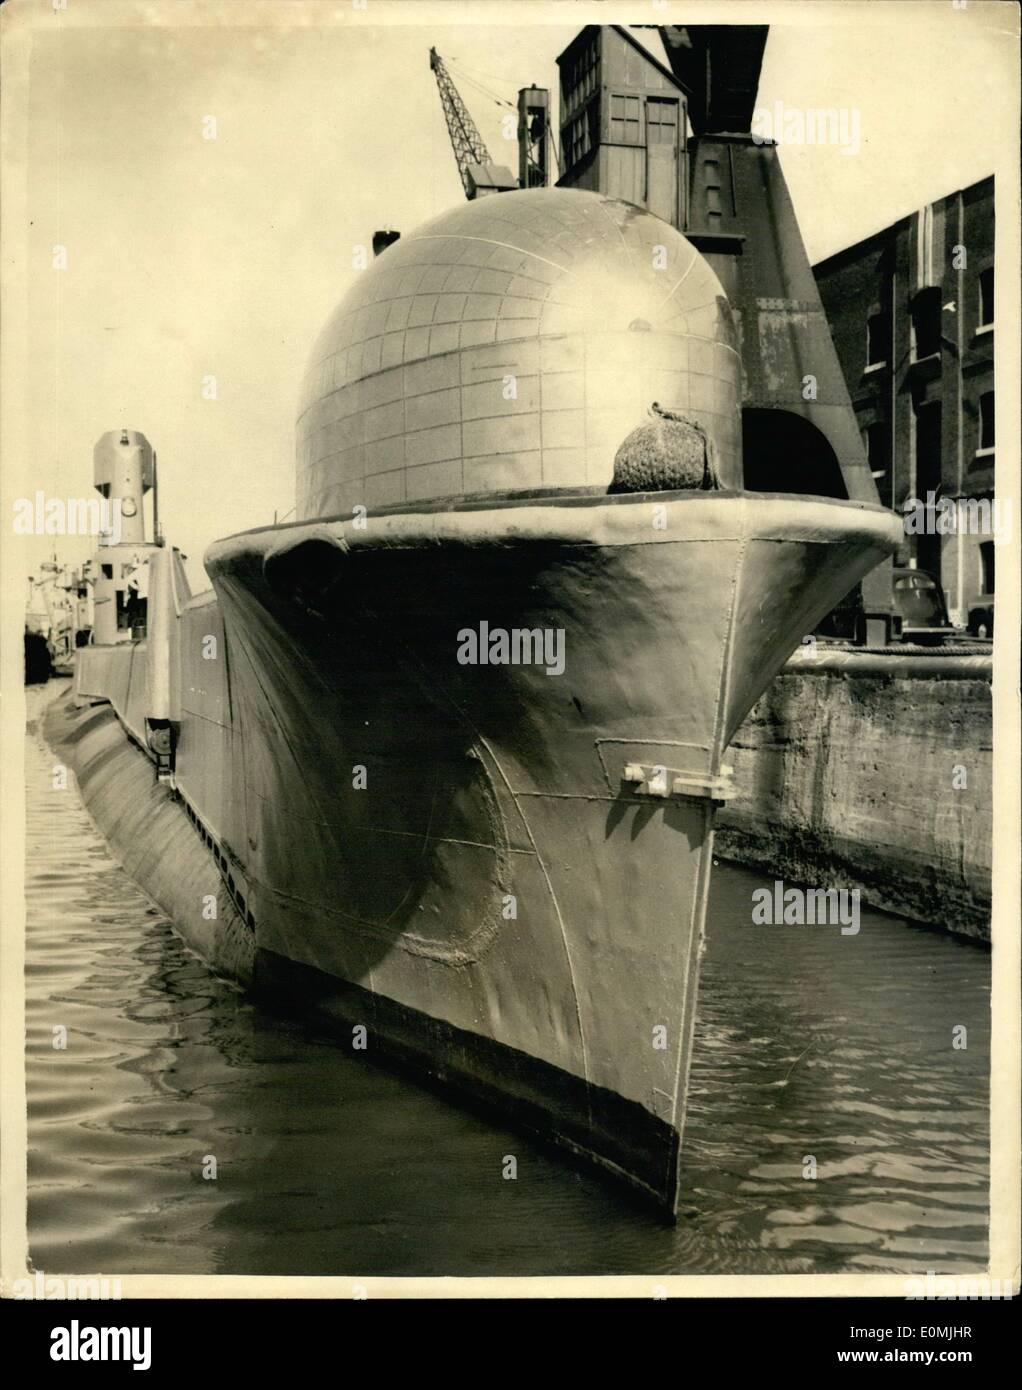 06. Jun. 1955 - die R.N. Experimental Submarine kommt auf den Bögen zum London Strange Dome. H.N.E. Thermopylae von Lieut kommandiert. Kommandant W.D. Scott R.N. ist jetzt auf einem Besuch in London und war am Nachmittag am East India Dock zu sehen. Sie wurde 1945 in Chatham gebaut und wurde modernisiertverlängert und wird heute hauptsächlich für experimentelle Zwecke verwendet. Sie wurde stromlinienförmig und hat auch eine seltsam aussehende Kuppel auf den Bögen. Foto zeigt Kopf auf Sicht des Handwerks an den East India Docks heute Nachmittag - zeigt die ungewöhnlich aussehende Kuppel auf ihren Bögen. Stockfoto